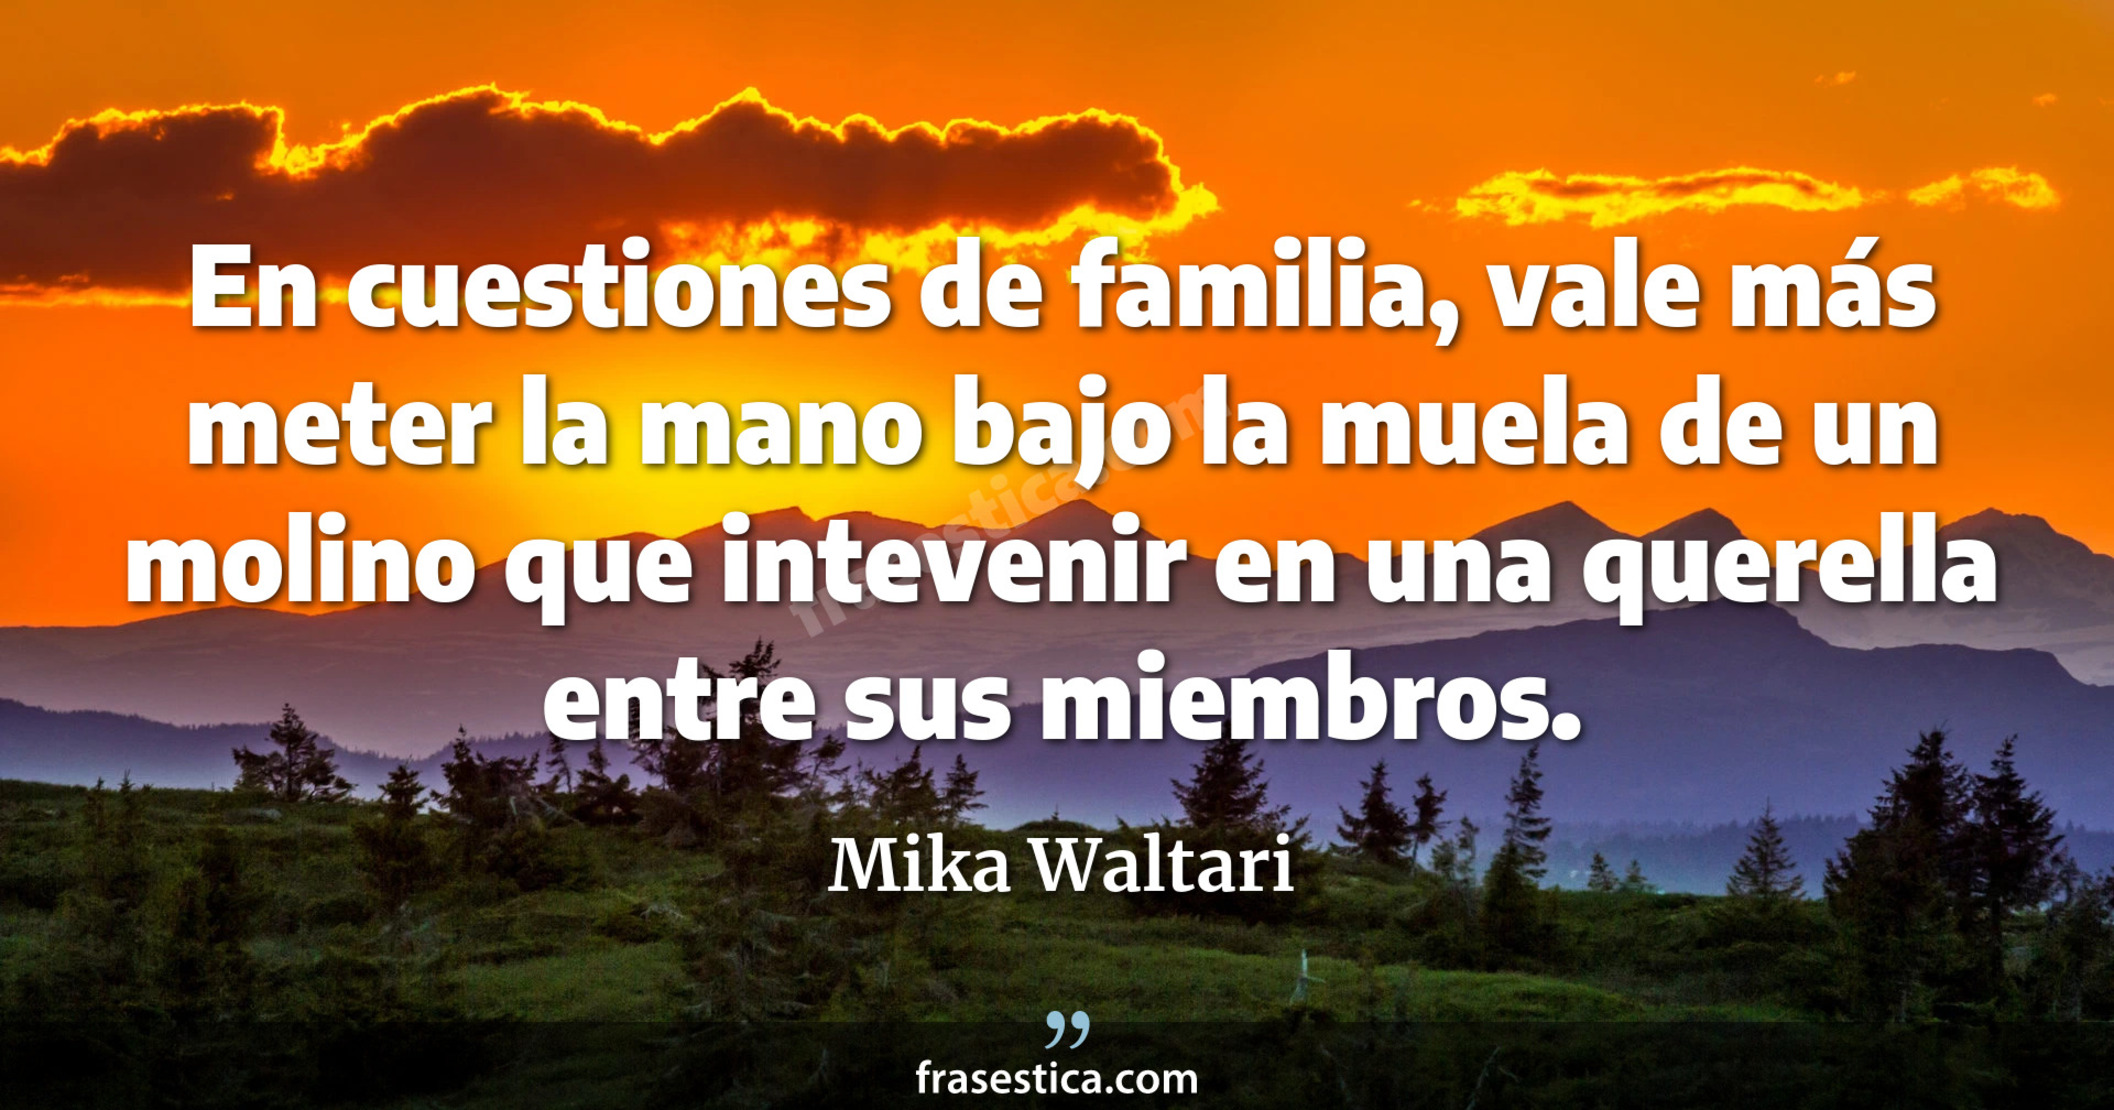 En cuestiones de familia, vale más meter la mano bajo la muela de un molino que intevenir en una querella entre sus miembros. - Mika Waltari